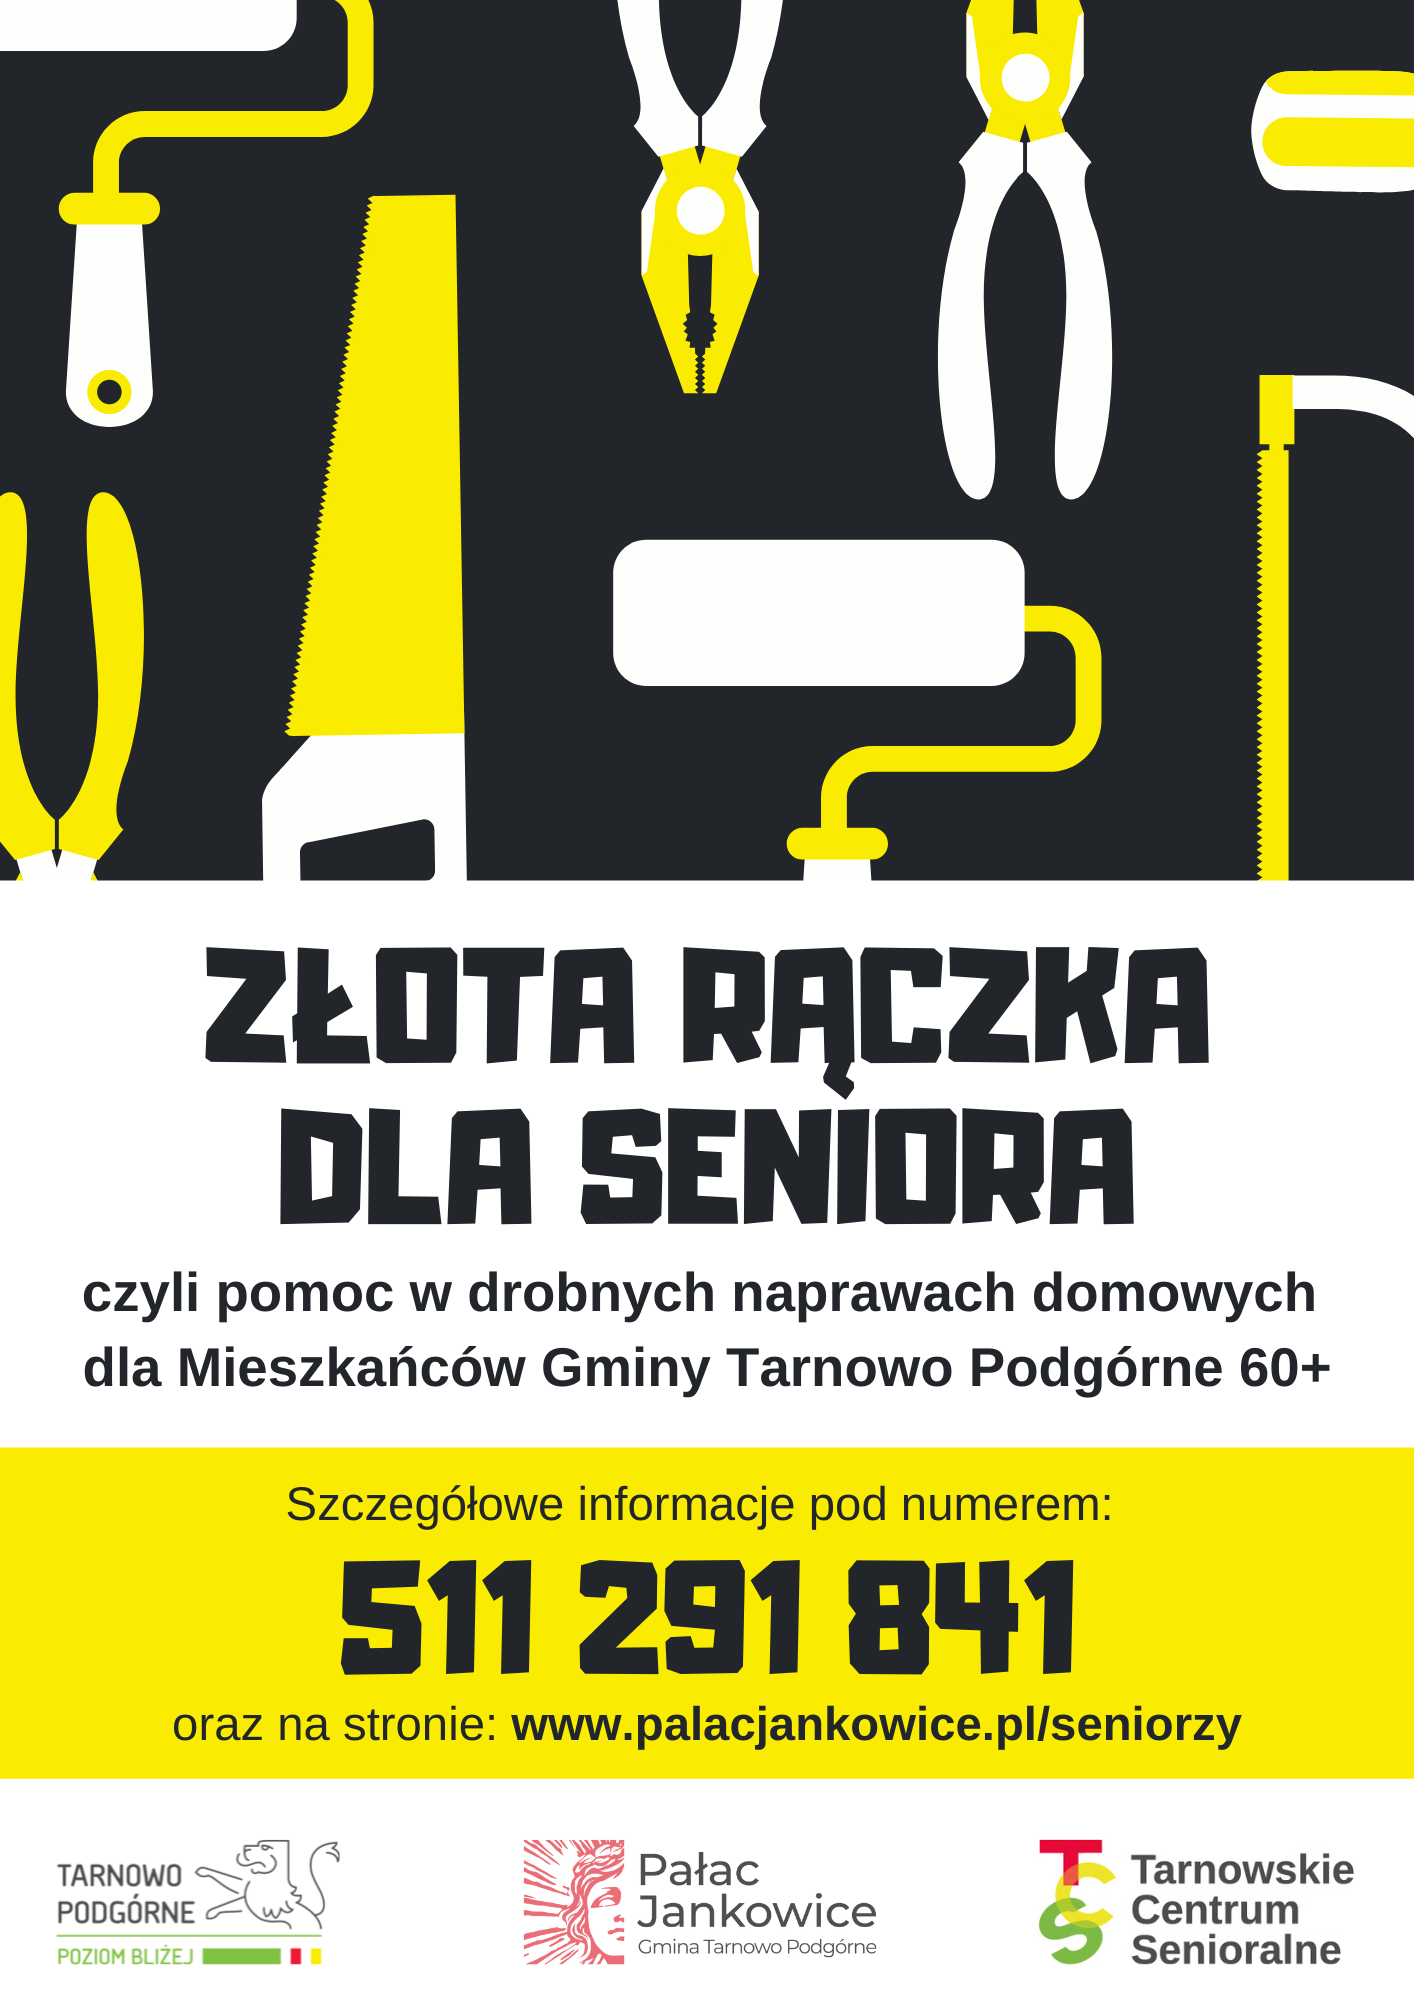 https://www.palacjankowice.pl/wp-content/uploads/2021/10/Zlota-raczka-dla-Seniora.png